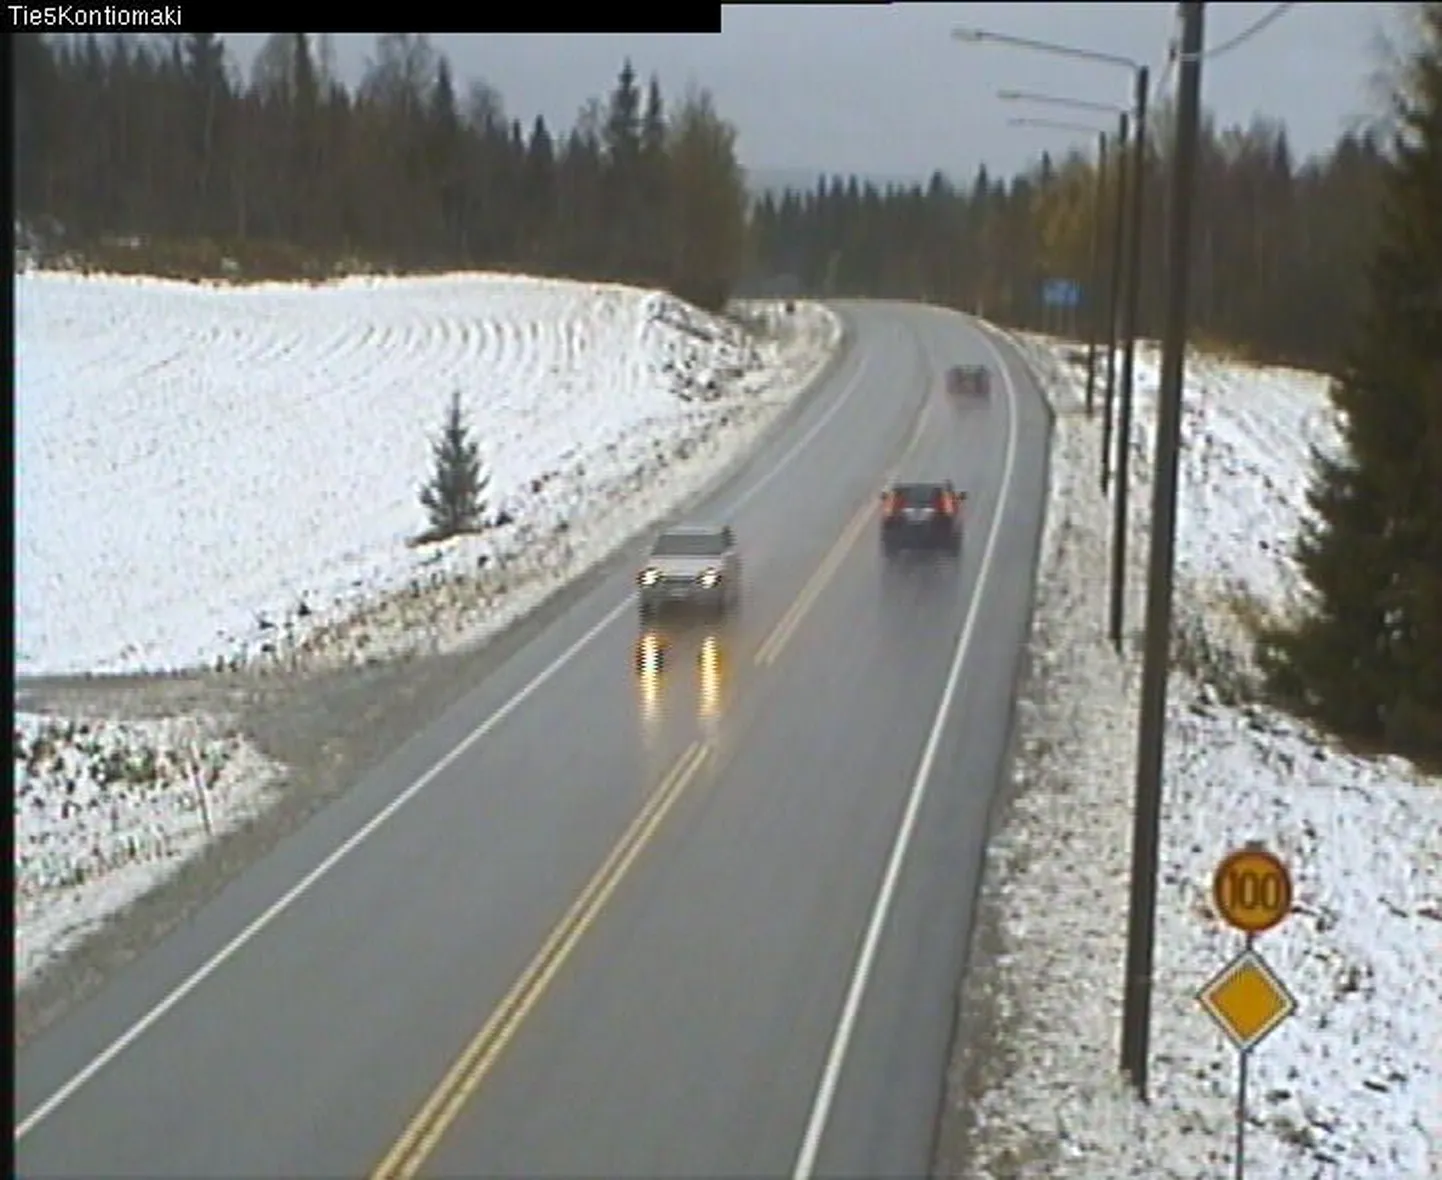 Lumine loodus Oulu läänis Paltamo vallas täna kell 15.17 (pilt on saadud maanteekaamerast).